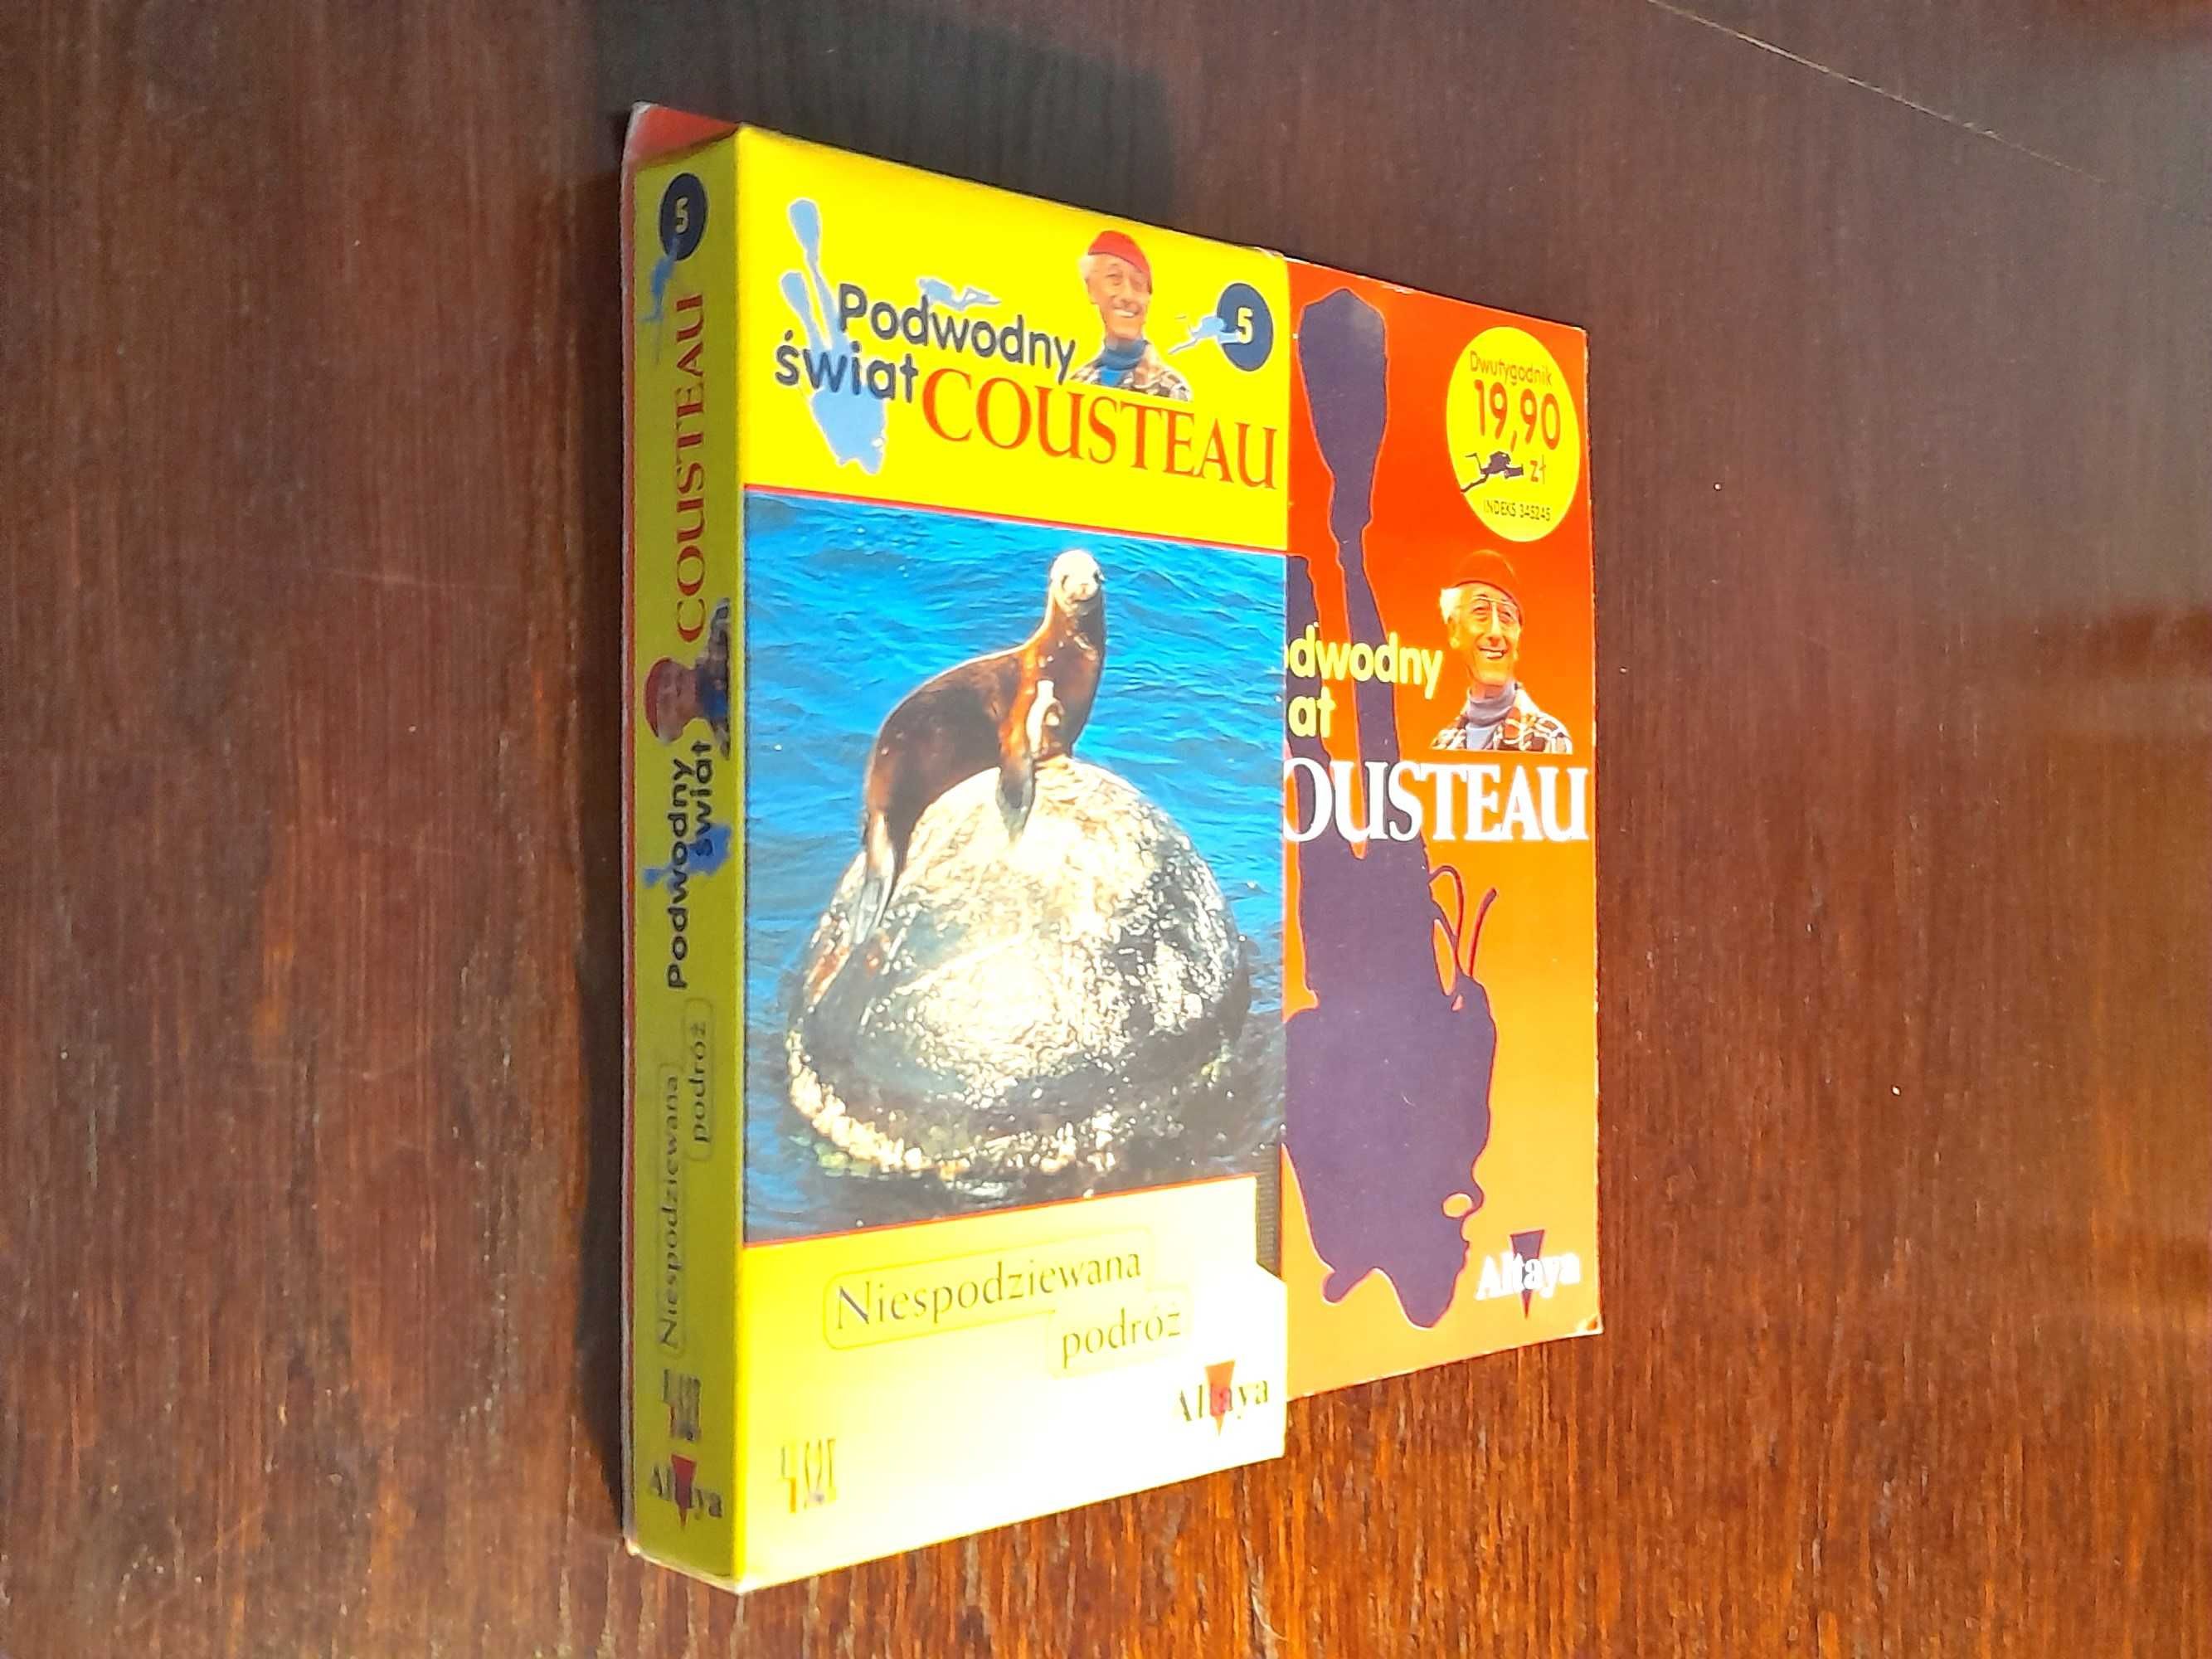 PODWODNY ŚWIAT COUSTEAU - Niespodziewana Podróż - kaseta wideo VHS